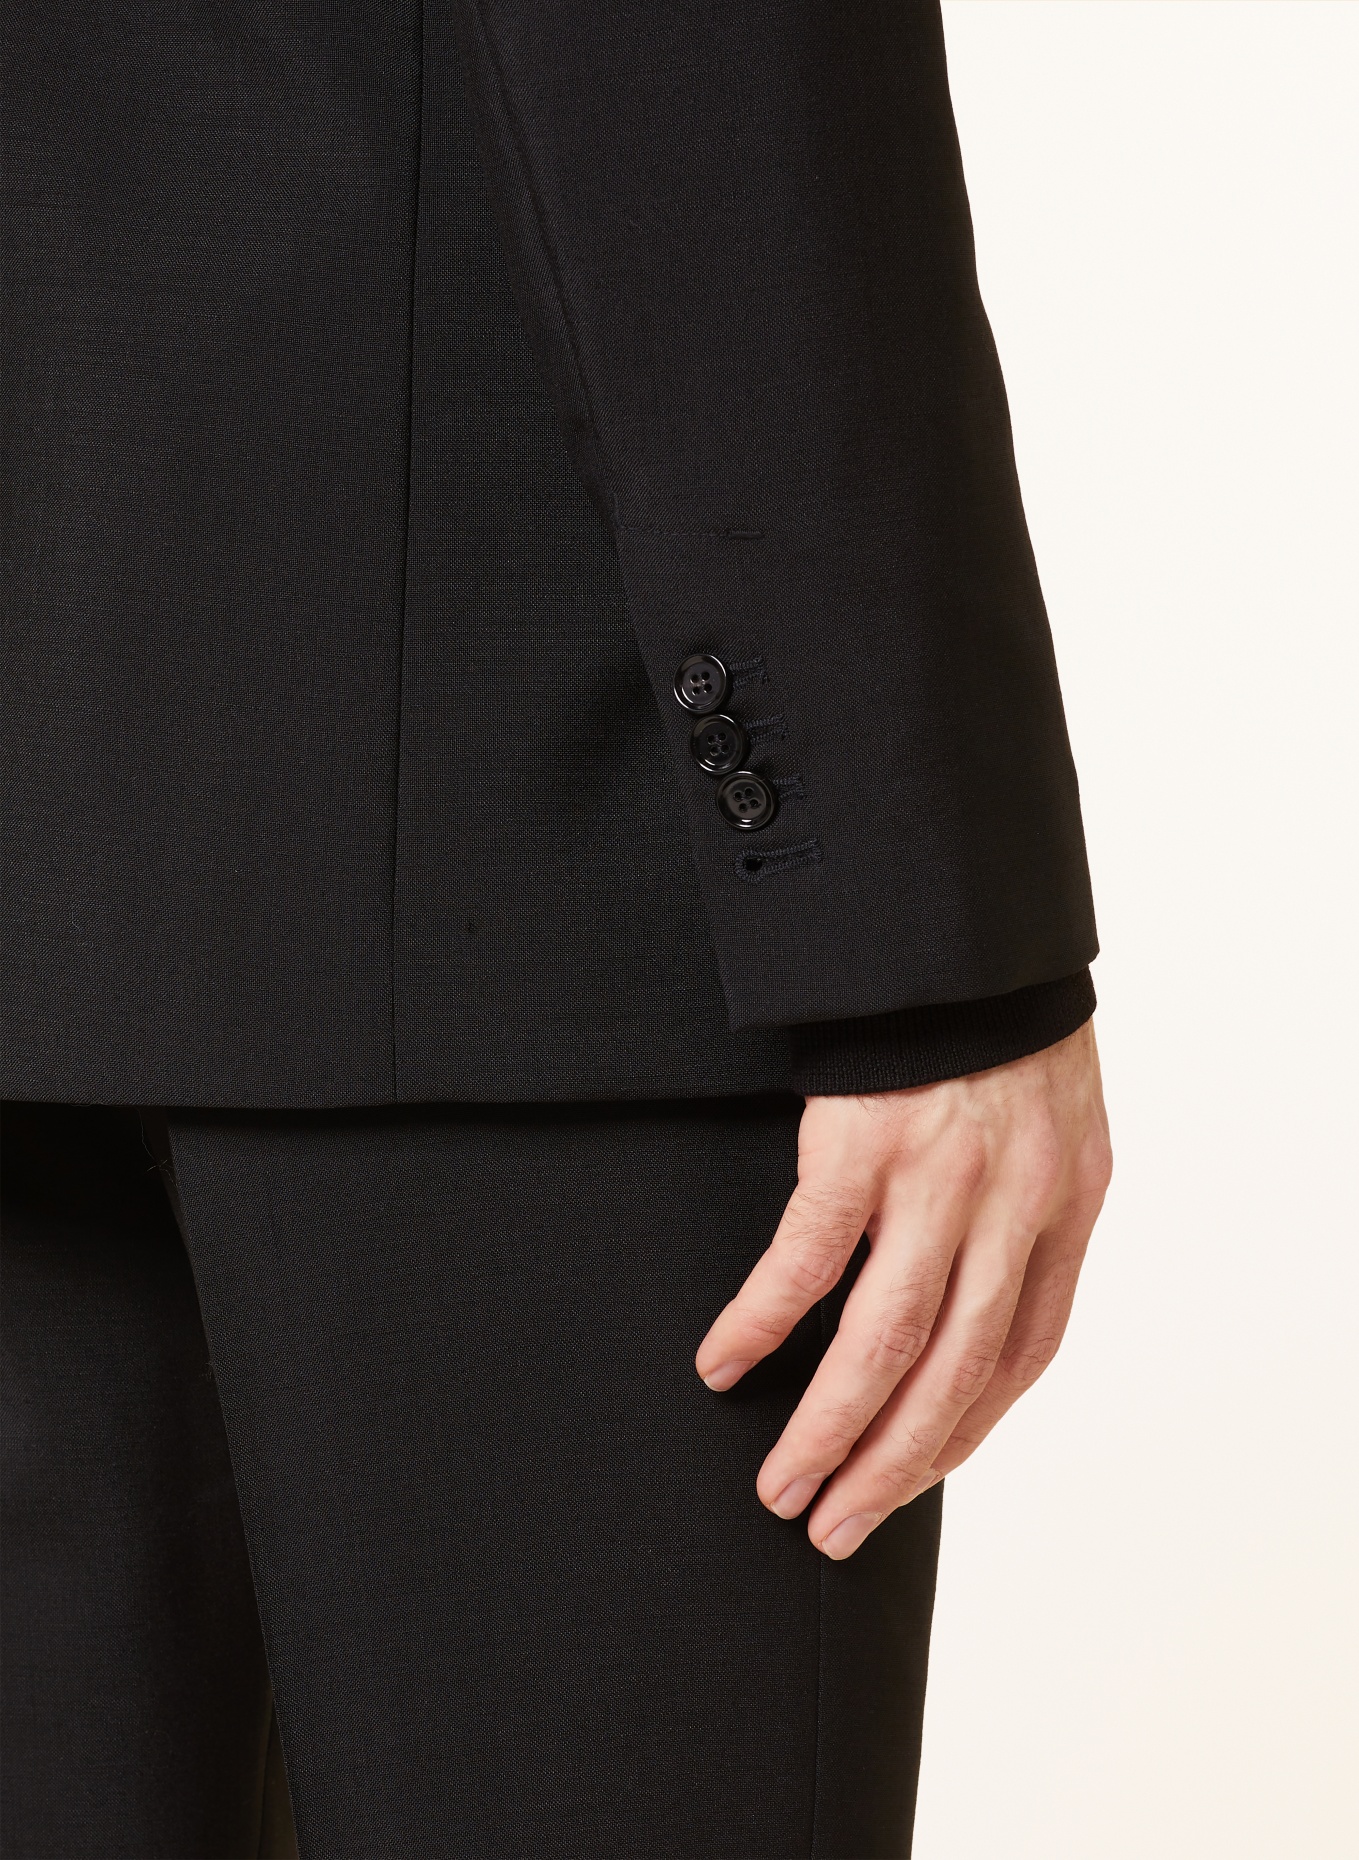 AMI PARIS Suit jacket regular fit, Color: 001 BLACK (Image 6)